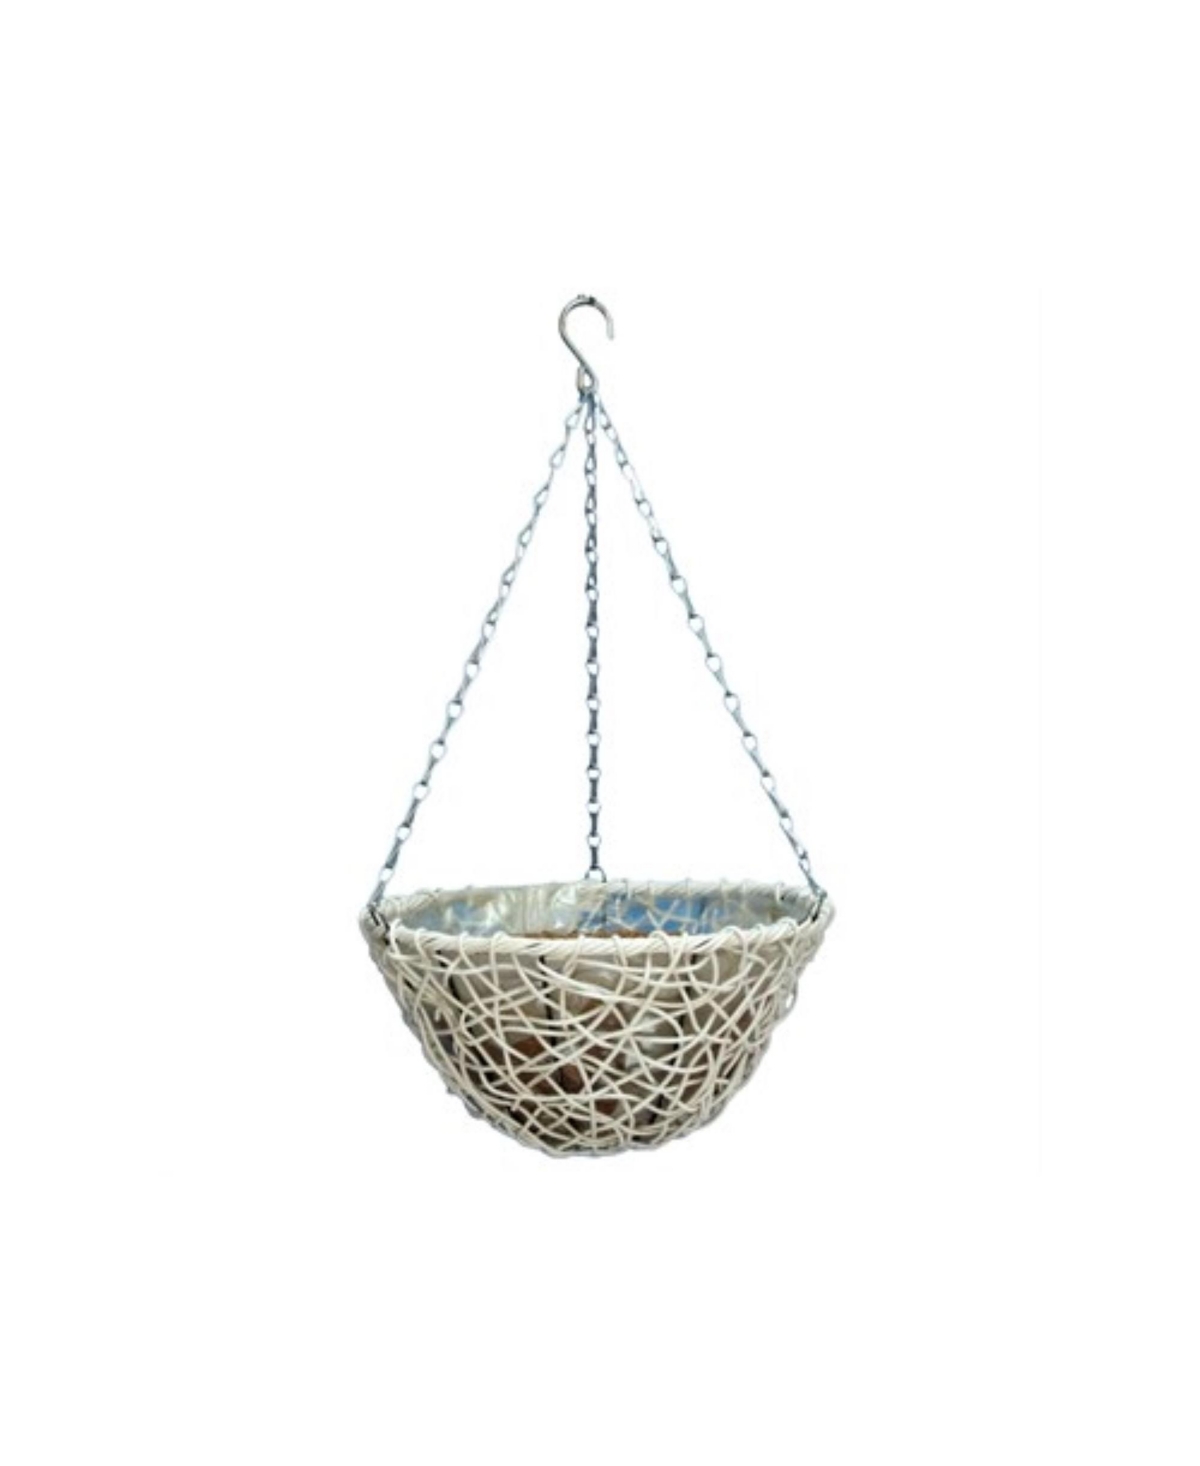 Resin Wicker Hanging Basket, White, 12" - White